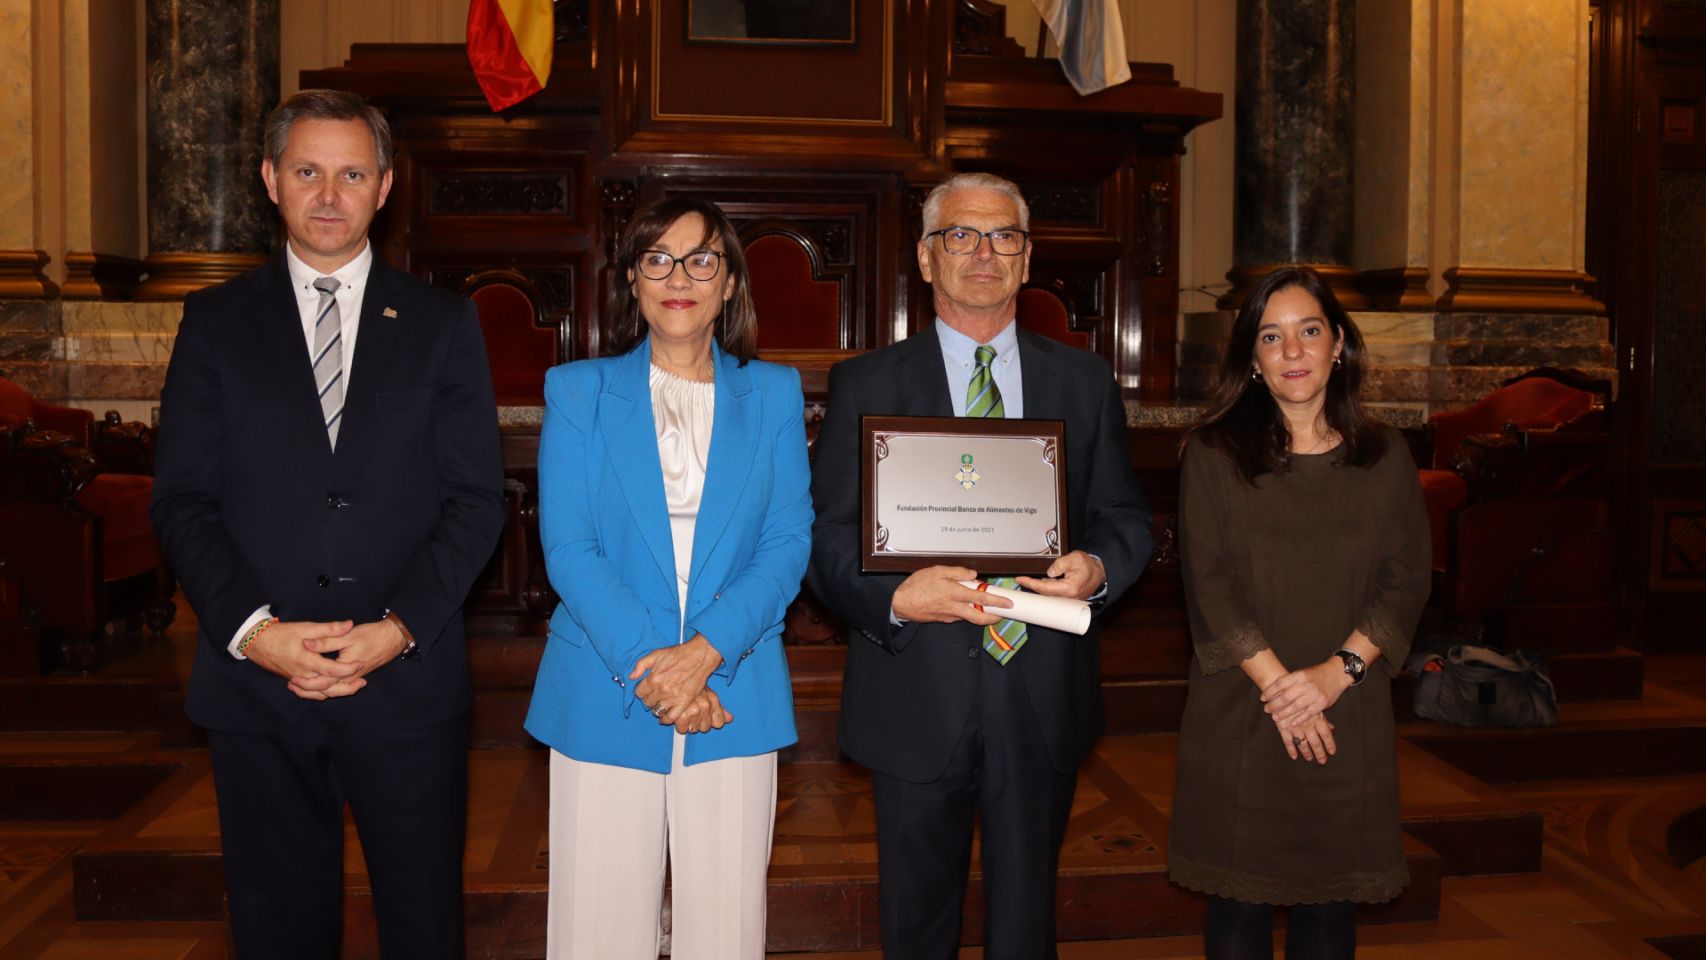 El presidente del Banco de Alimentos de Vigo, Iván Martínez, recoge la placa de honor de la Orden del Mérito Civil.